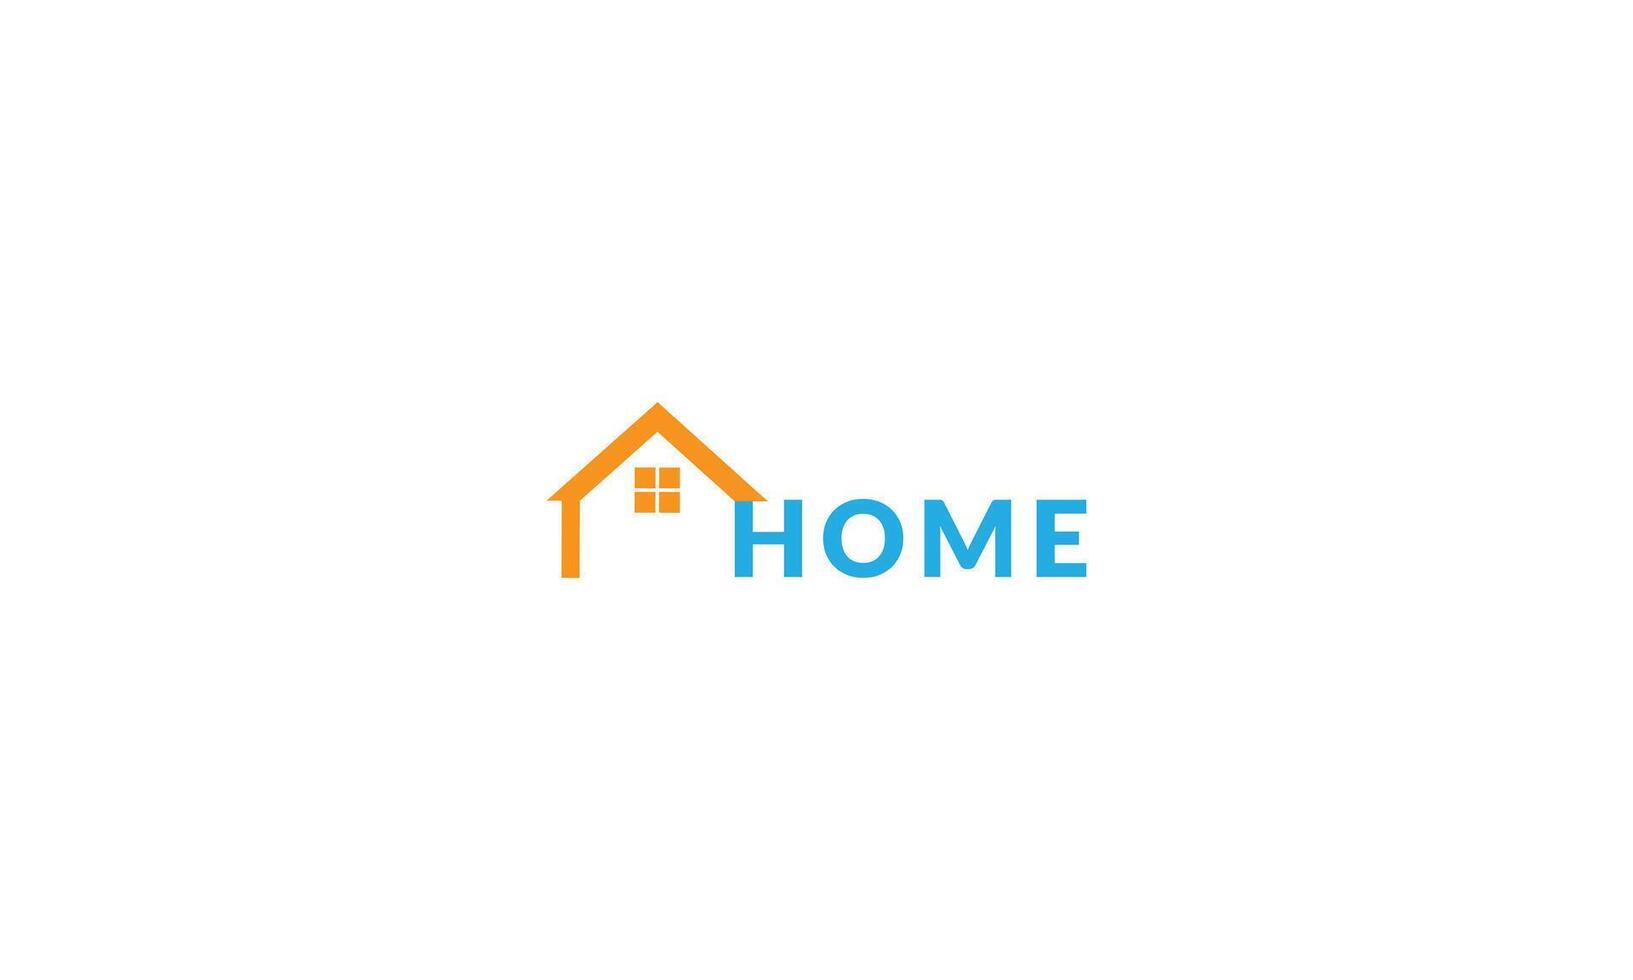 onze logo, met haar knus huis ontwerp, is een testament naar de zin van behoren wij voorzien. vector